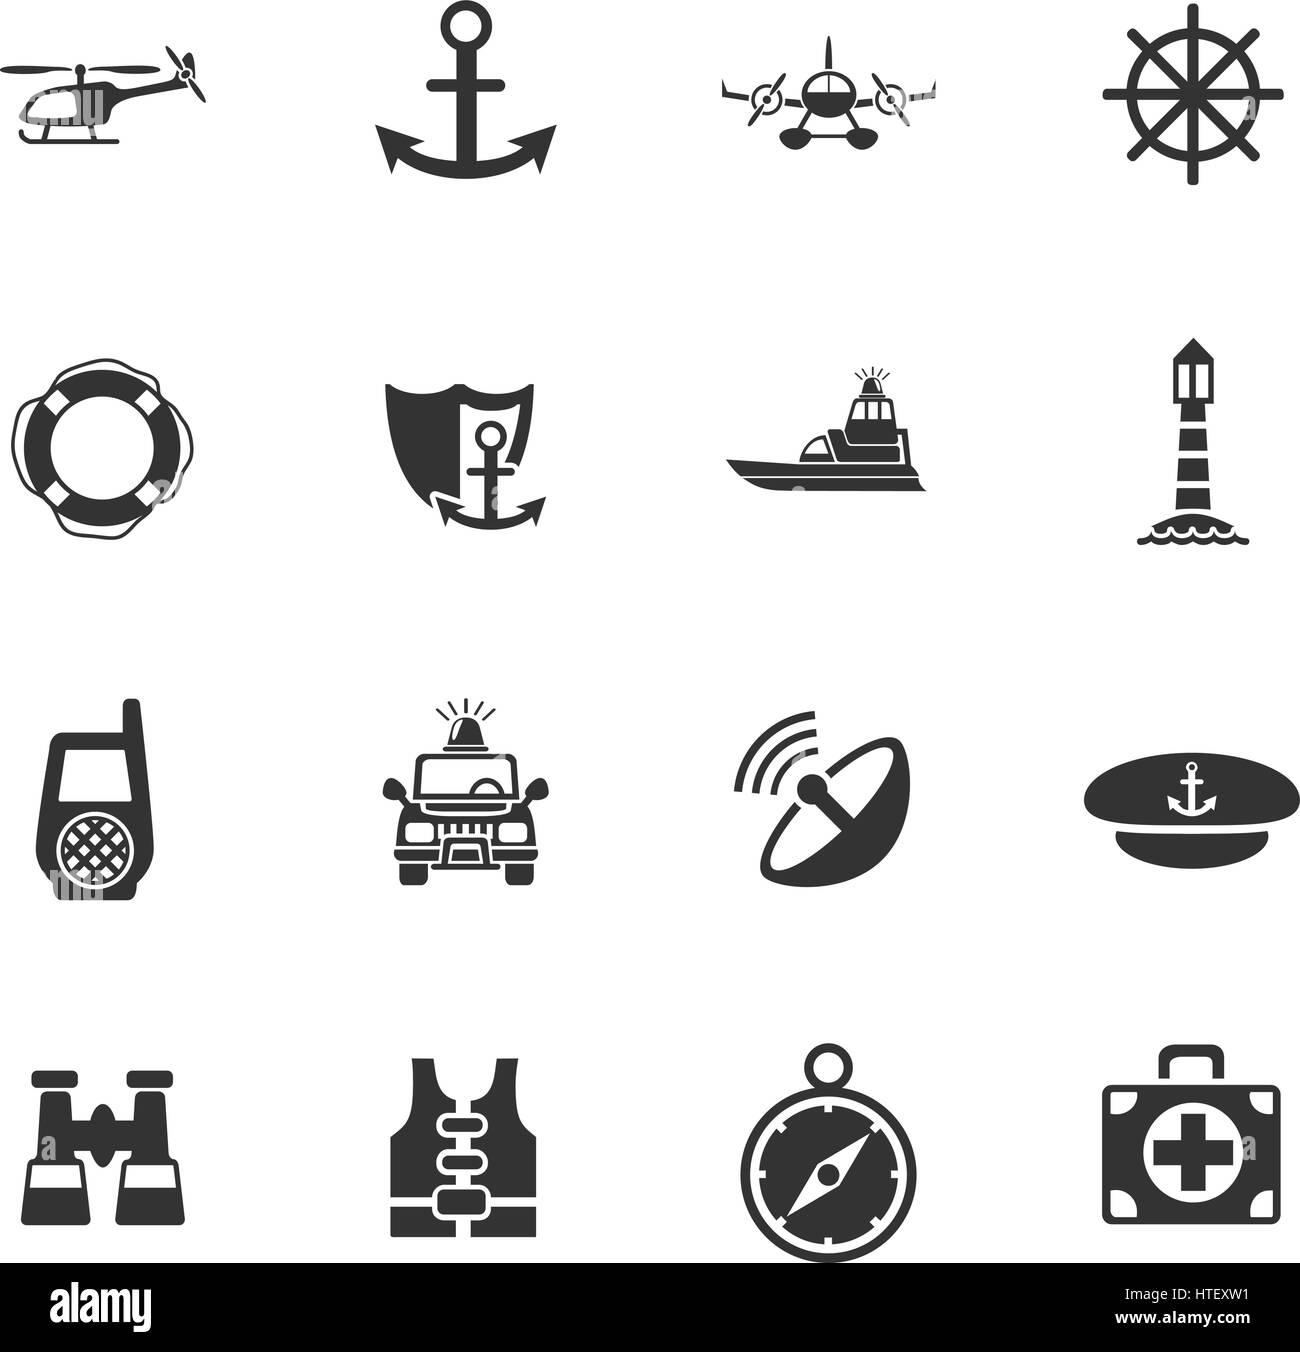 coastguard web icons for user interface design Stock Vector